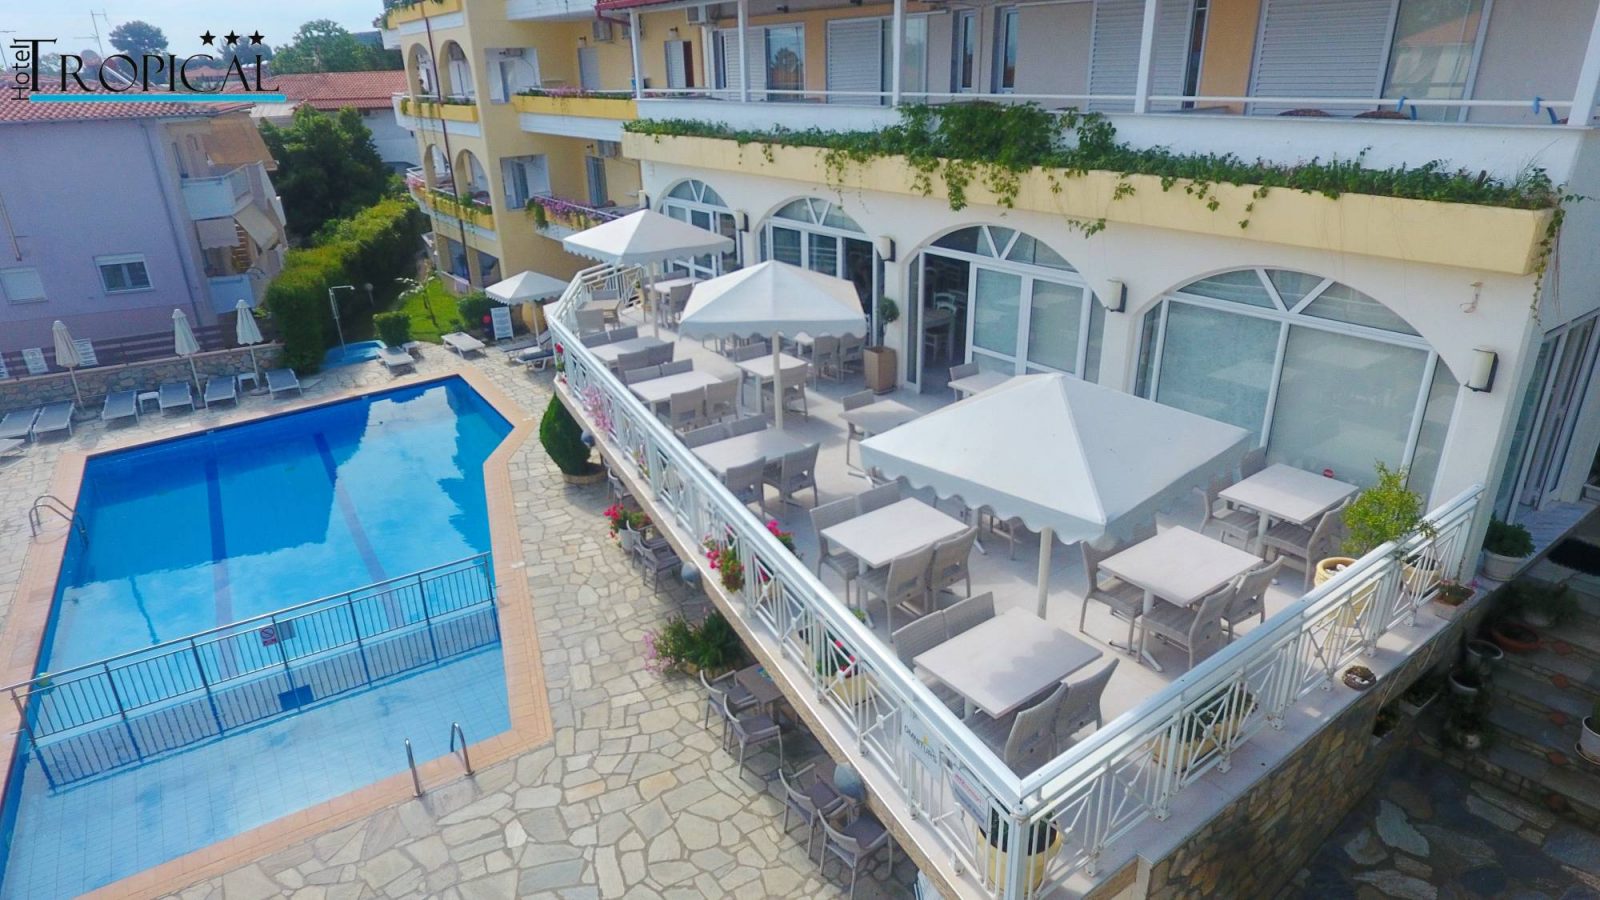 Grcka hoteli letovanje, Halkidiki, Hanioti,Tropical,bazen i terasa